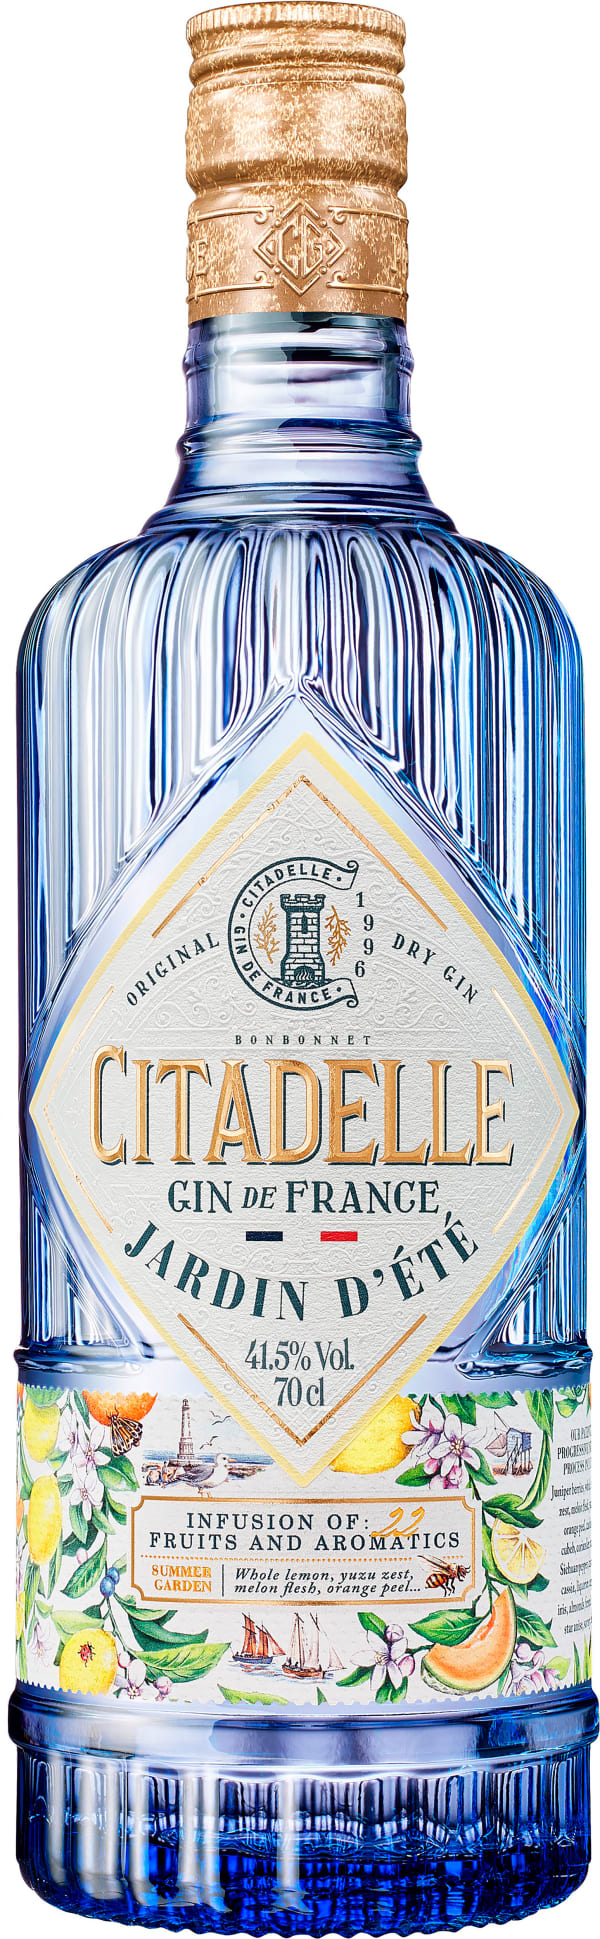 Citadelle Gin Jardin d´été - Frankreich - 0,7l - 41,5% vol